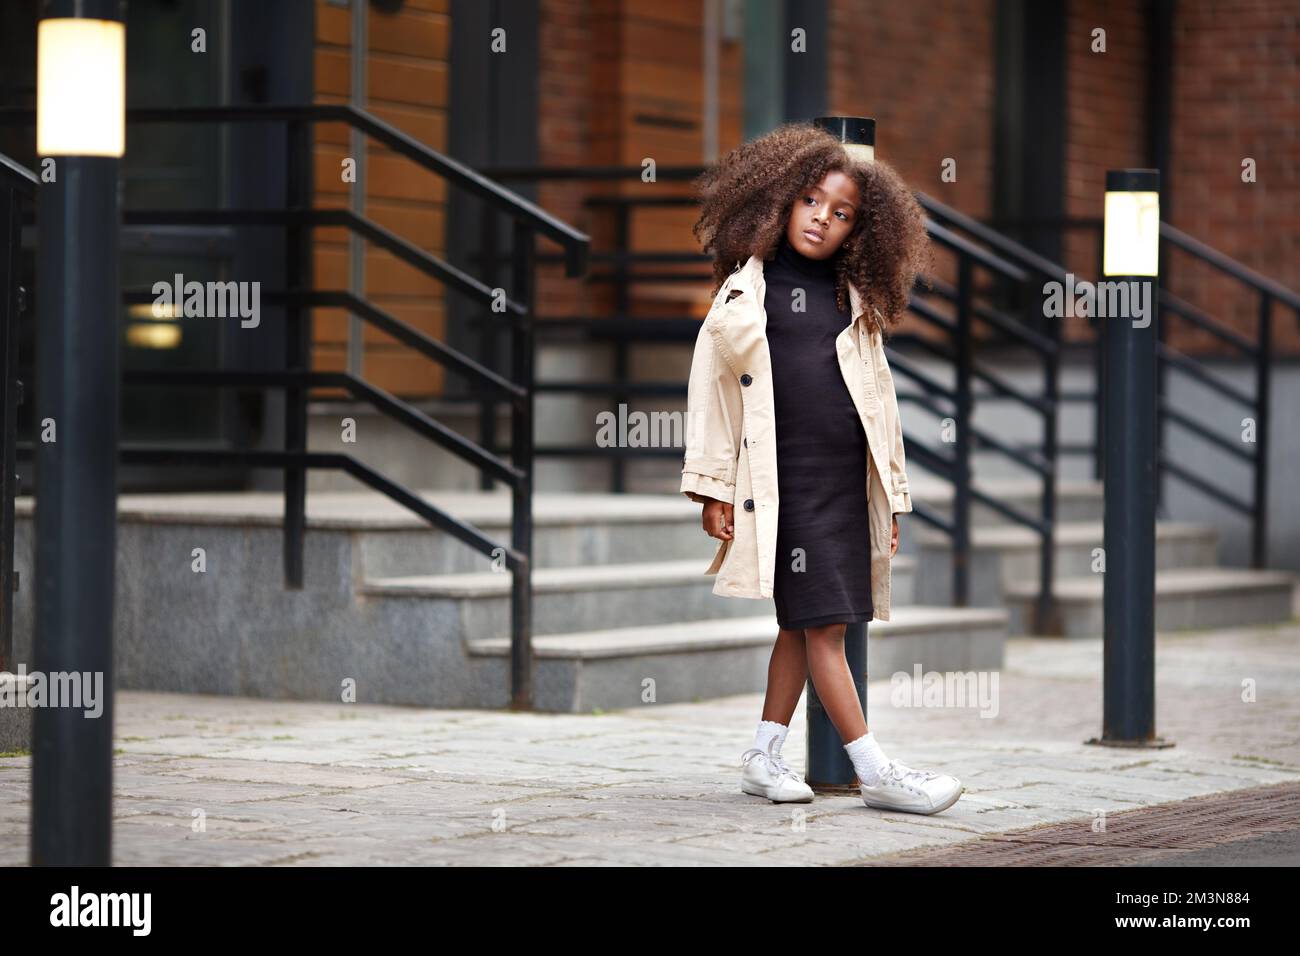 Ein nachdenkliches kleines Mädchen, das auf der Straße steht und auf jemanden wartet, wegschaut, modisch gekleidet in Trenchcoat und schwarzem Kleid. Volle Länge po Stockfoto